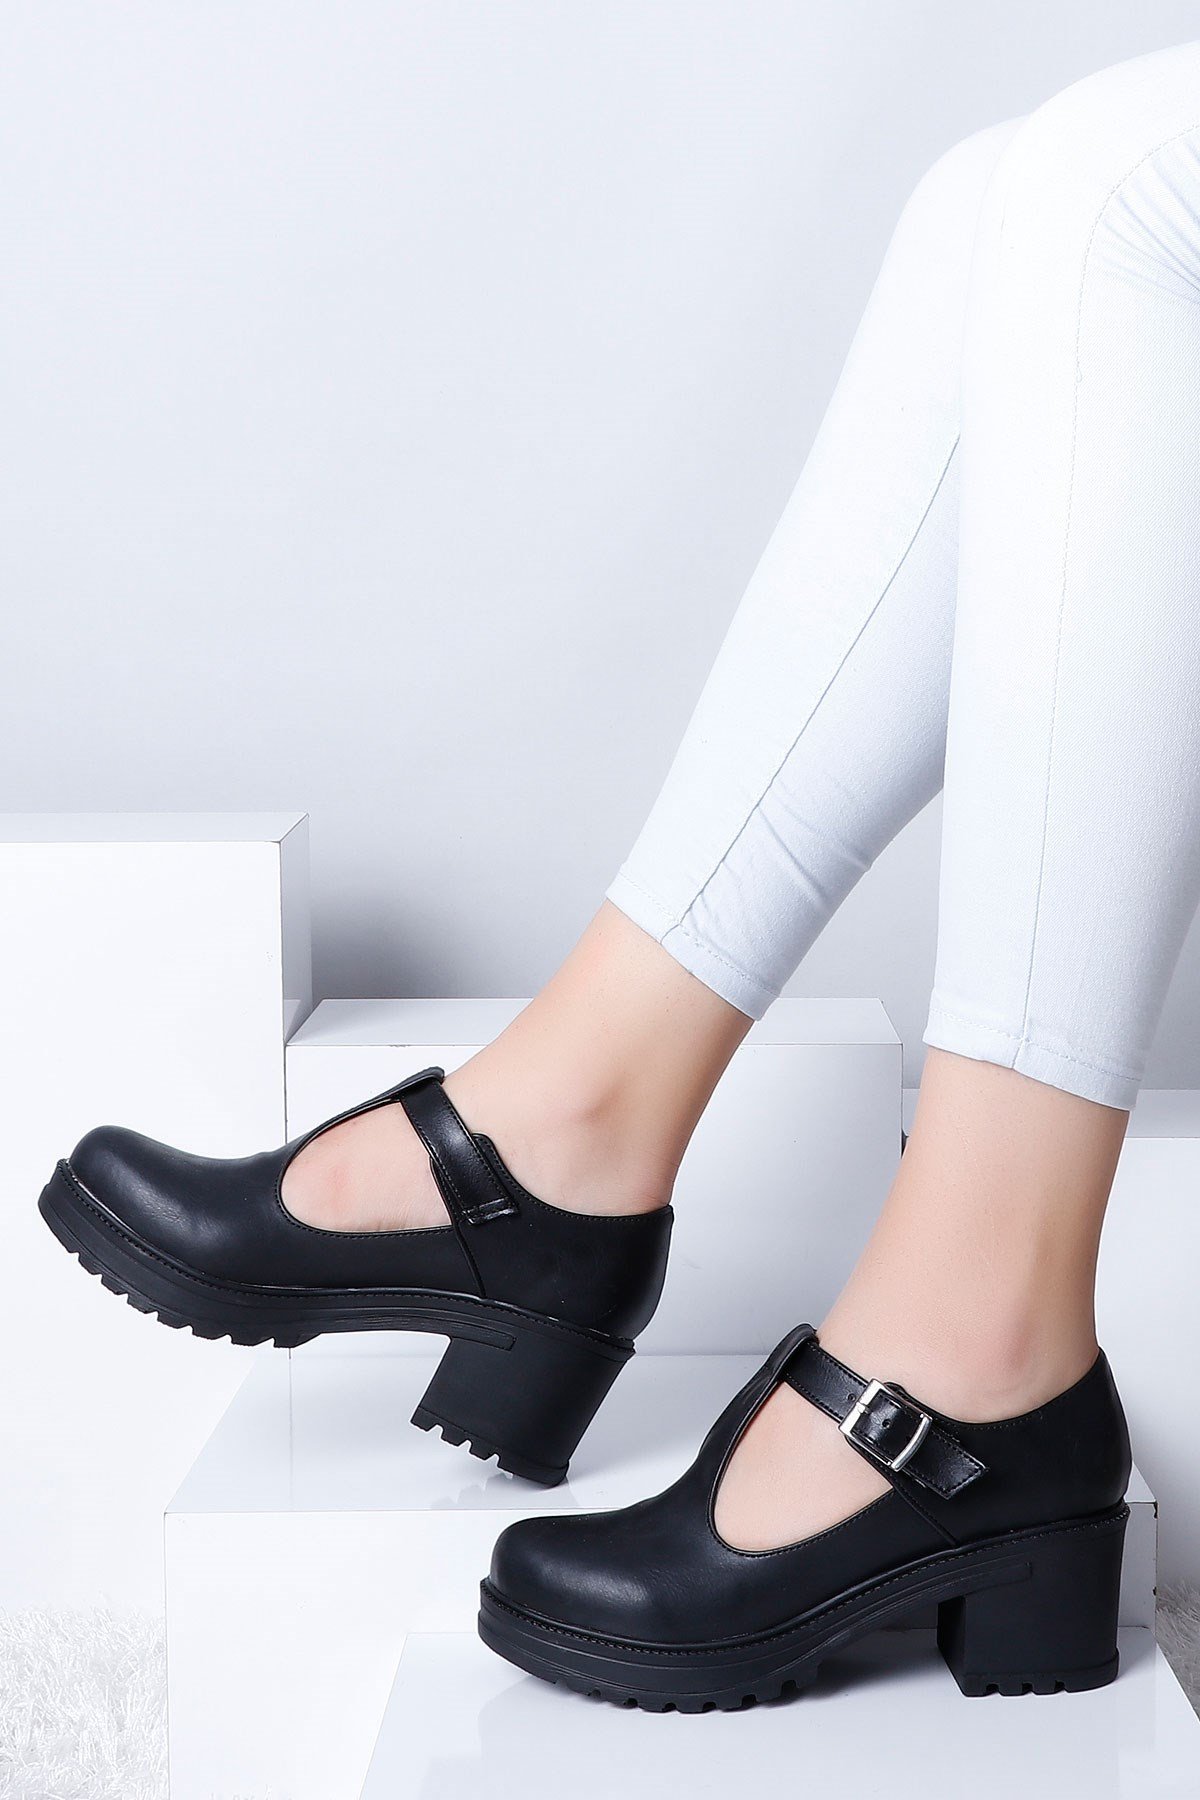 Siyah Kalın Taban Topuklu Kadın Ayakkabı 211 Fiyatı ve Modelleri